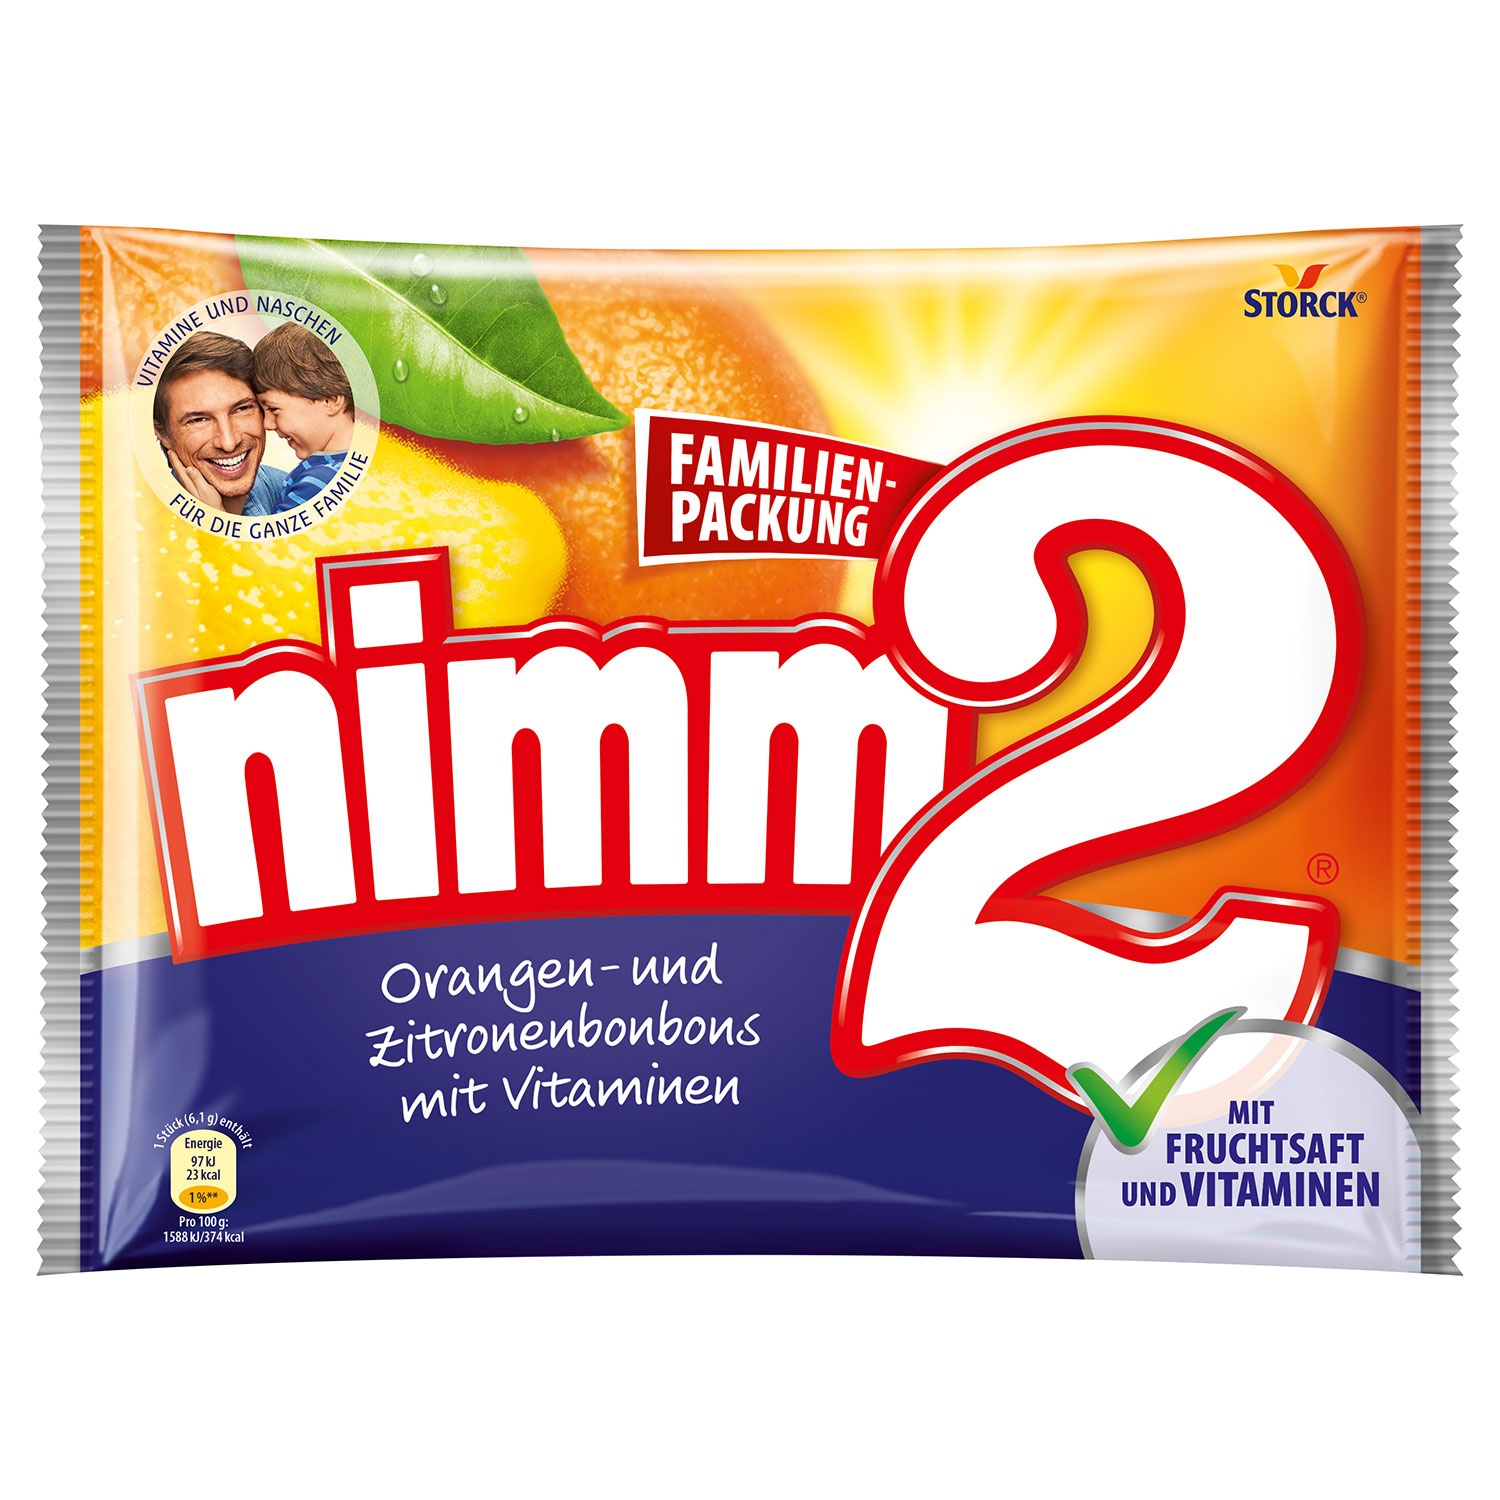 STORCK® nimm2 Orangen-und Zitronenbonbons mit Vitaminen Familienpackung 429g